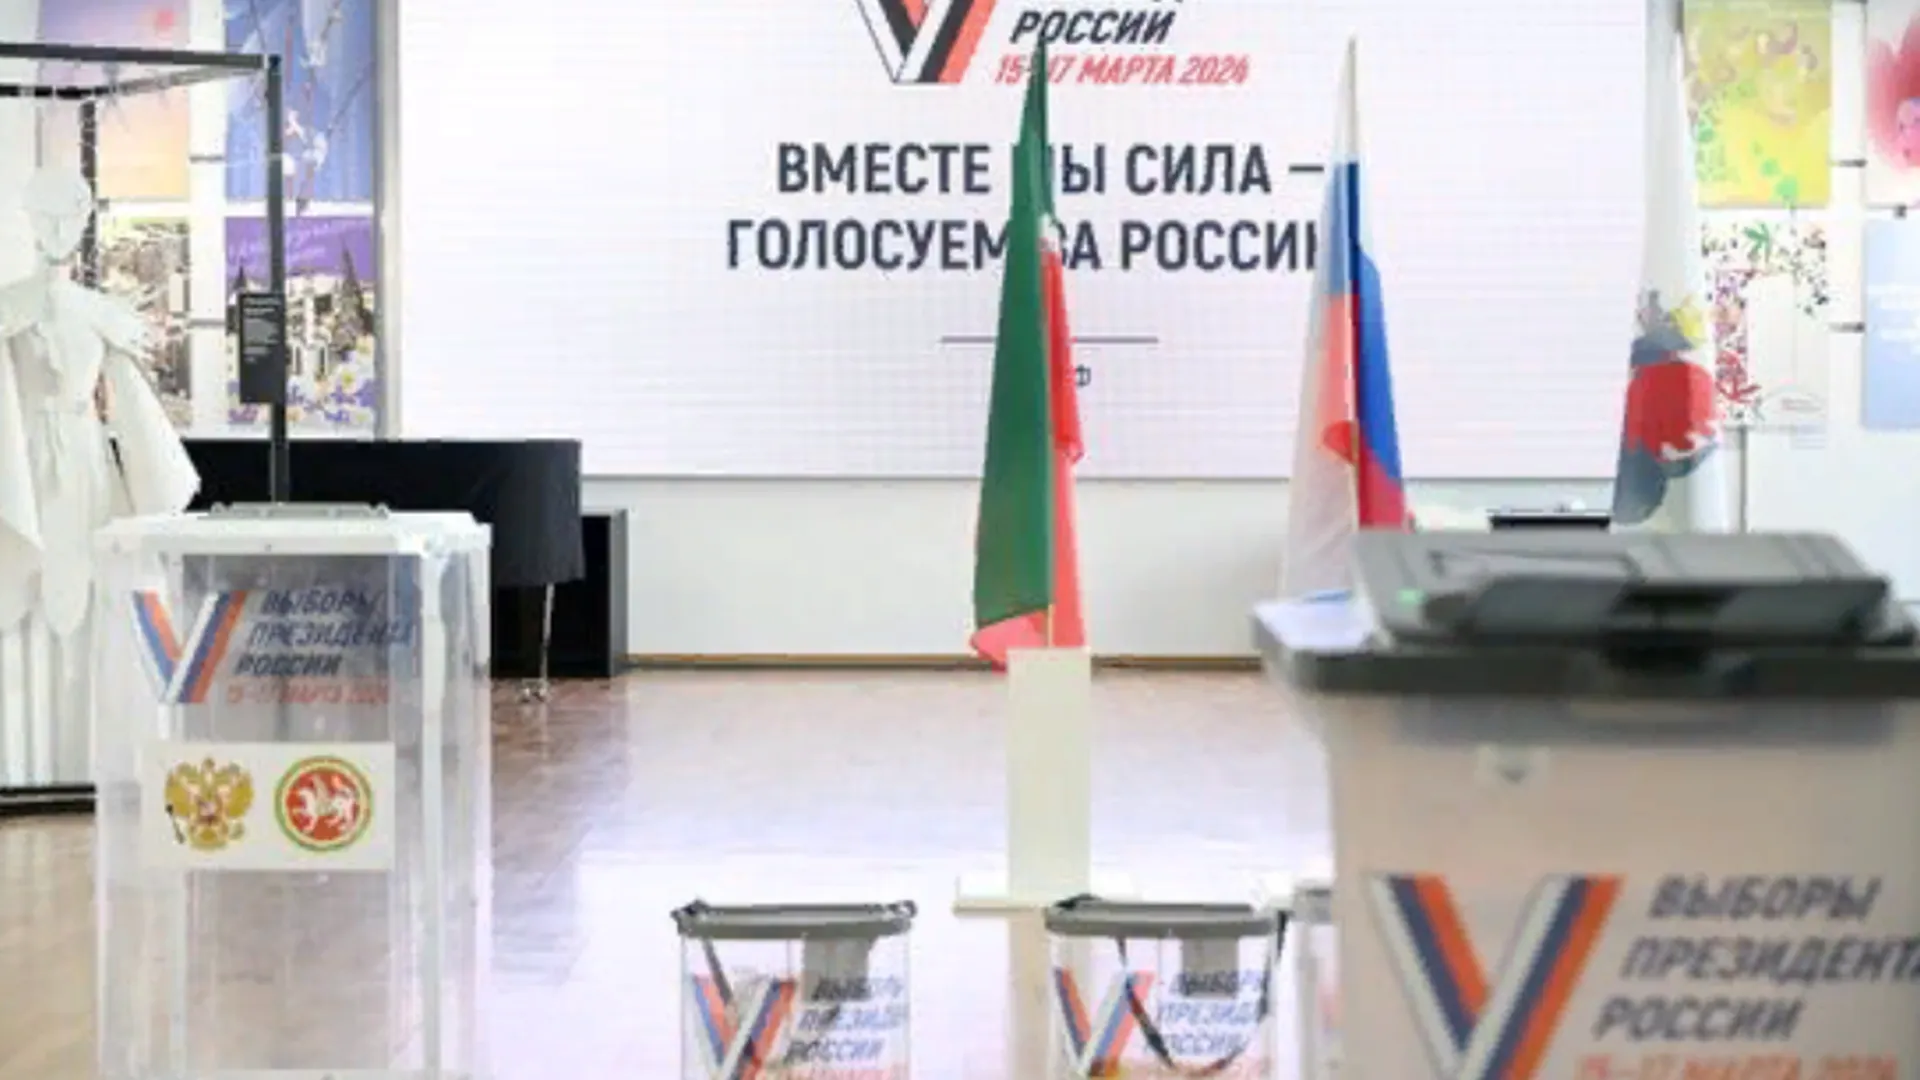 Участки для голосования на выборах открылись в восьми регионах Сибири